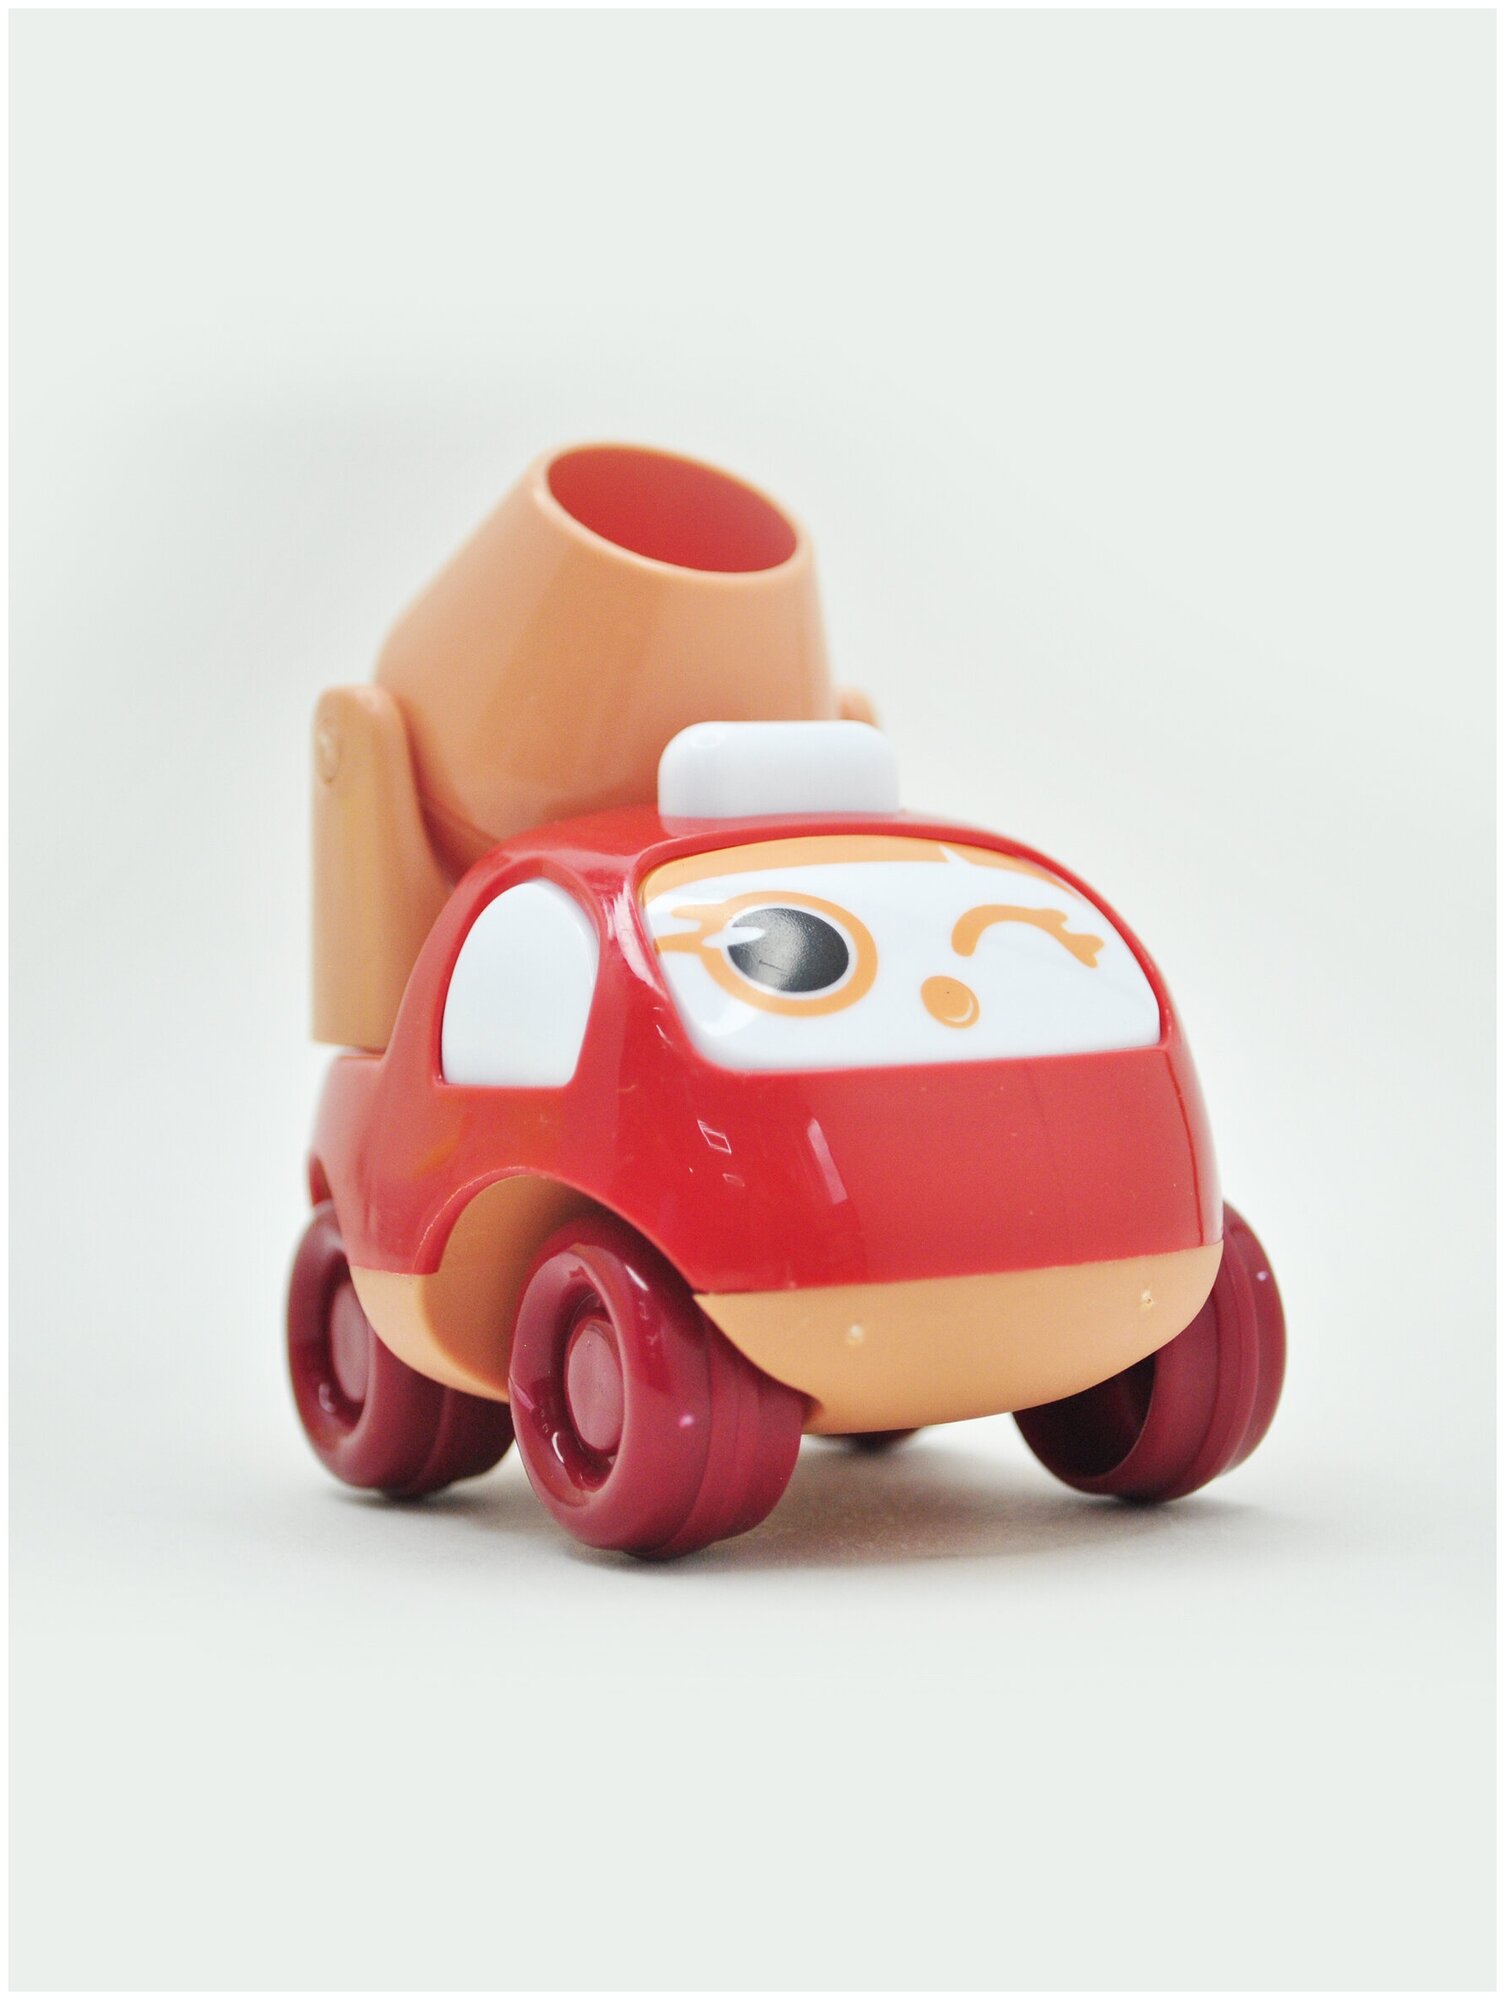 IBRICO/Набор детских машинок 4 шт / Машинки для детей / Набор детских игрушек / Иннерционная машинка